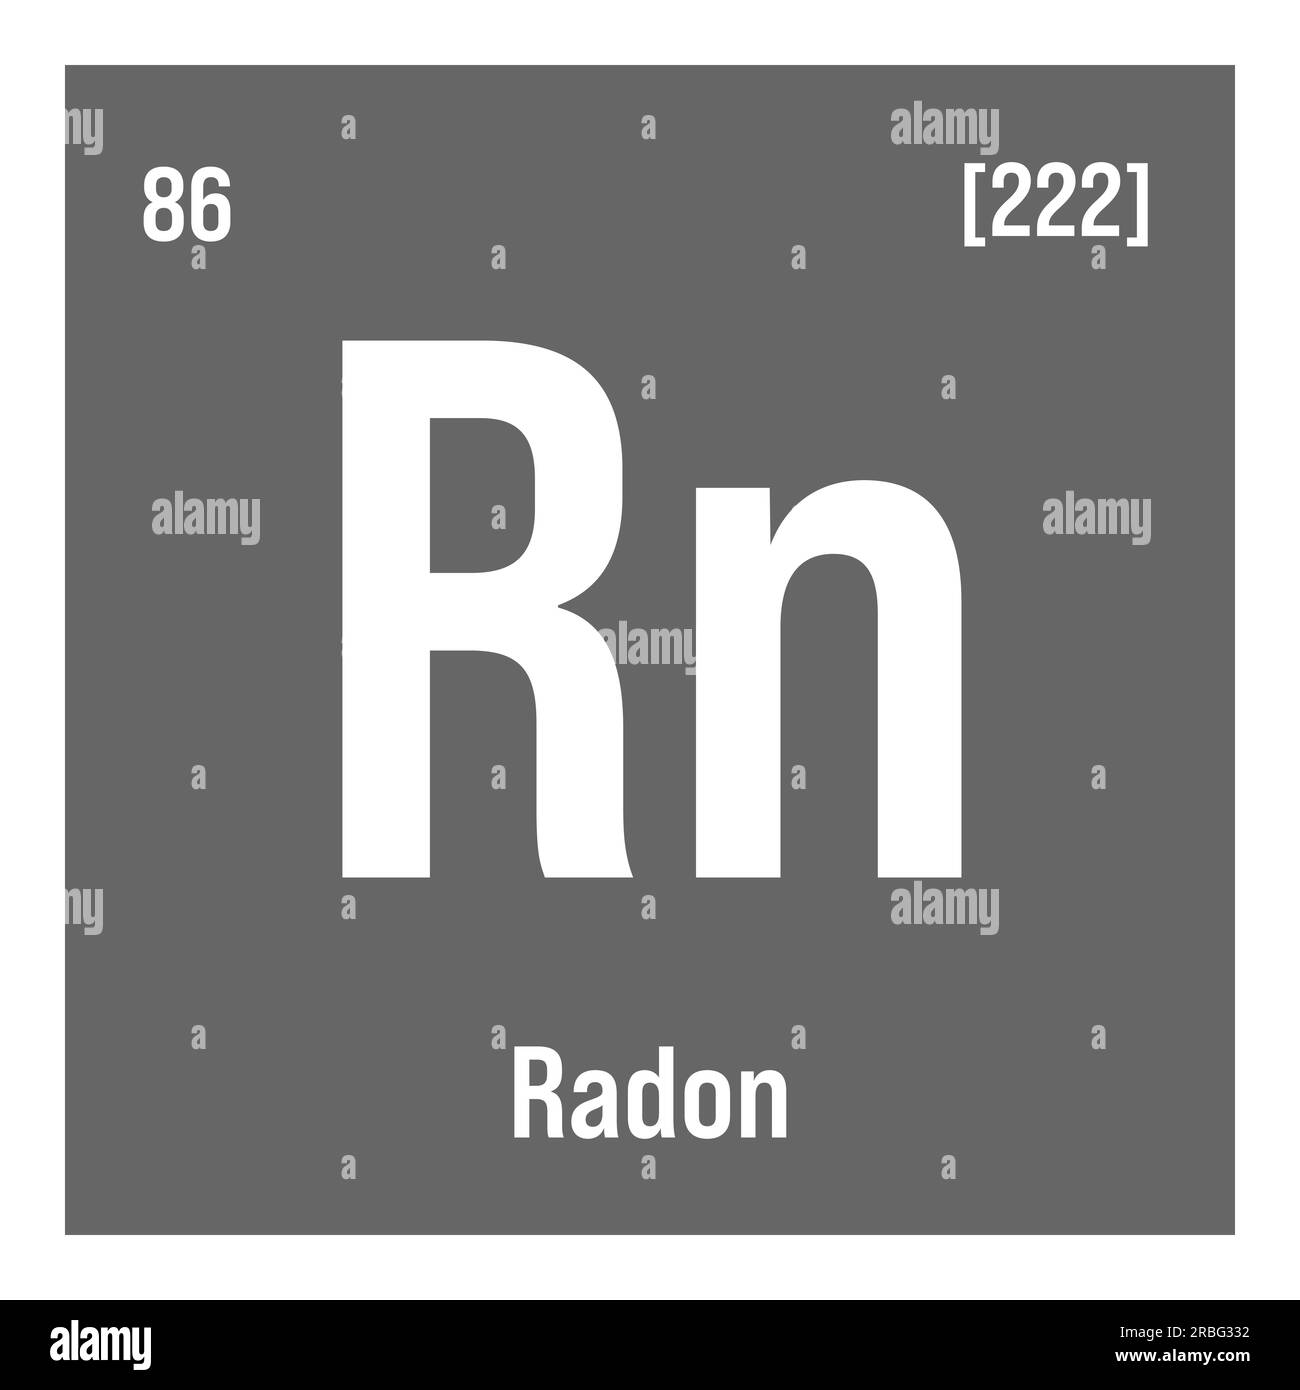 Radon, Rn, élément de table périodique avec nom, symbole, numéro atomique et poids. Gaz inerte aux propriétés radioactives, utilisé dans la recherche scientifique et comme traceur dans certains types d'expériences. Illustration de Vecteur